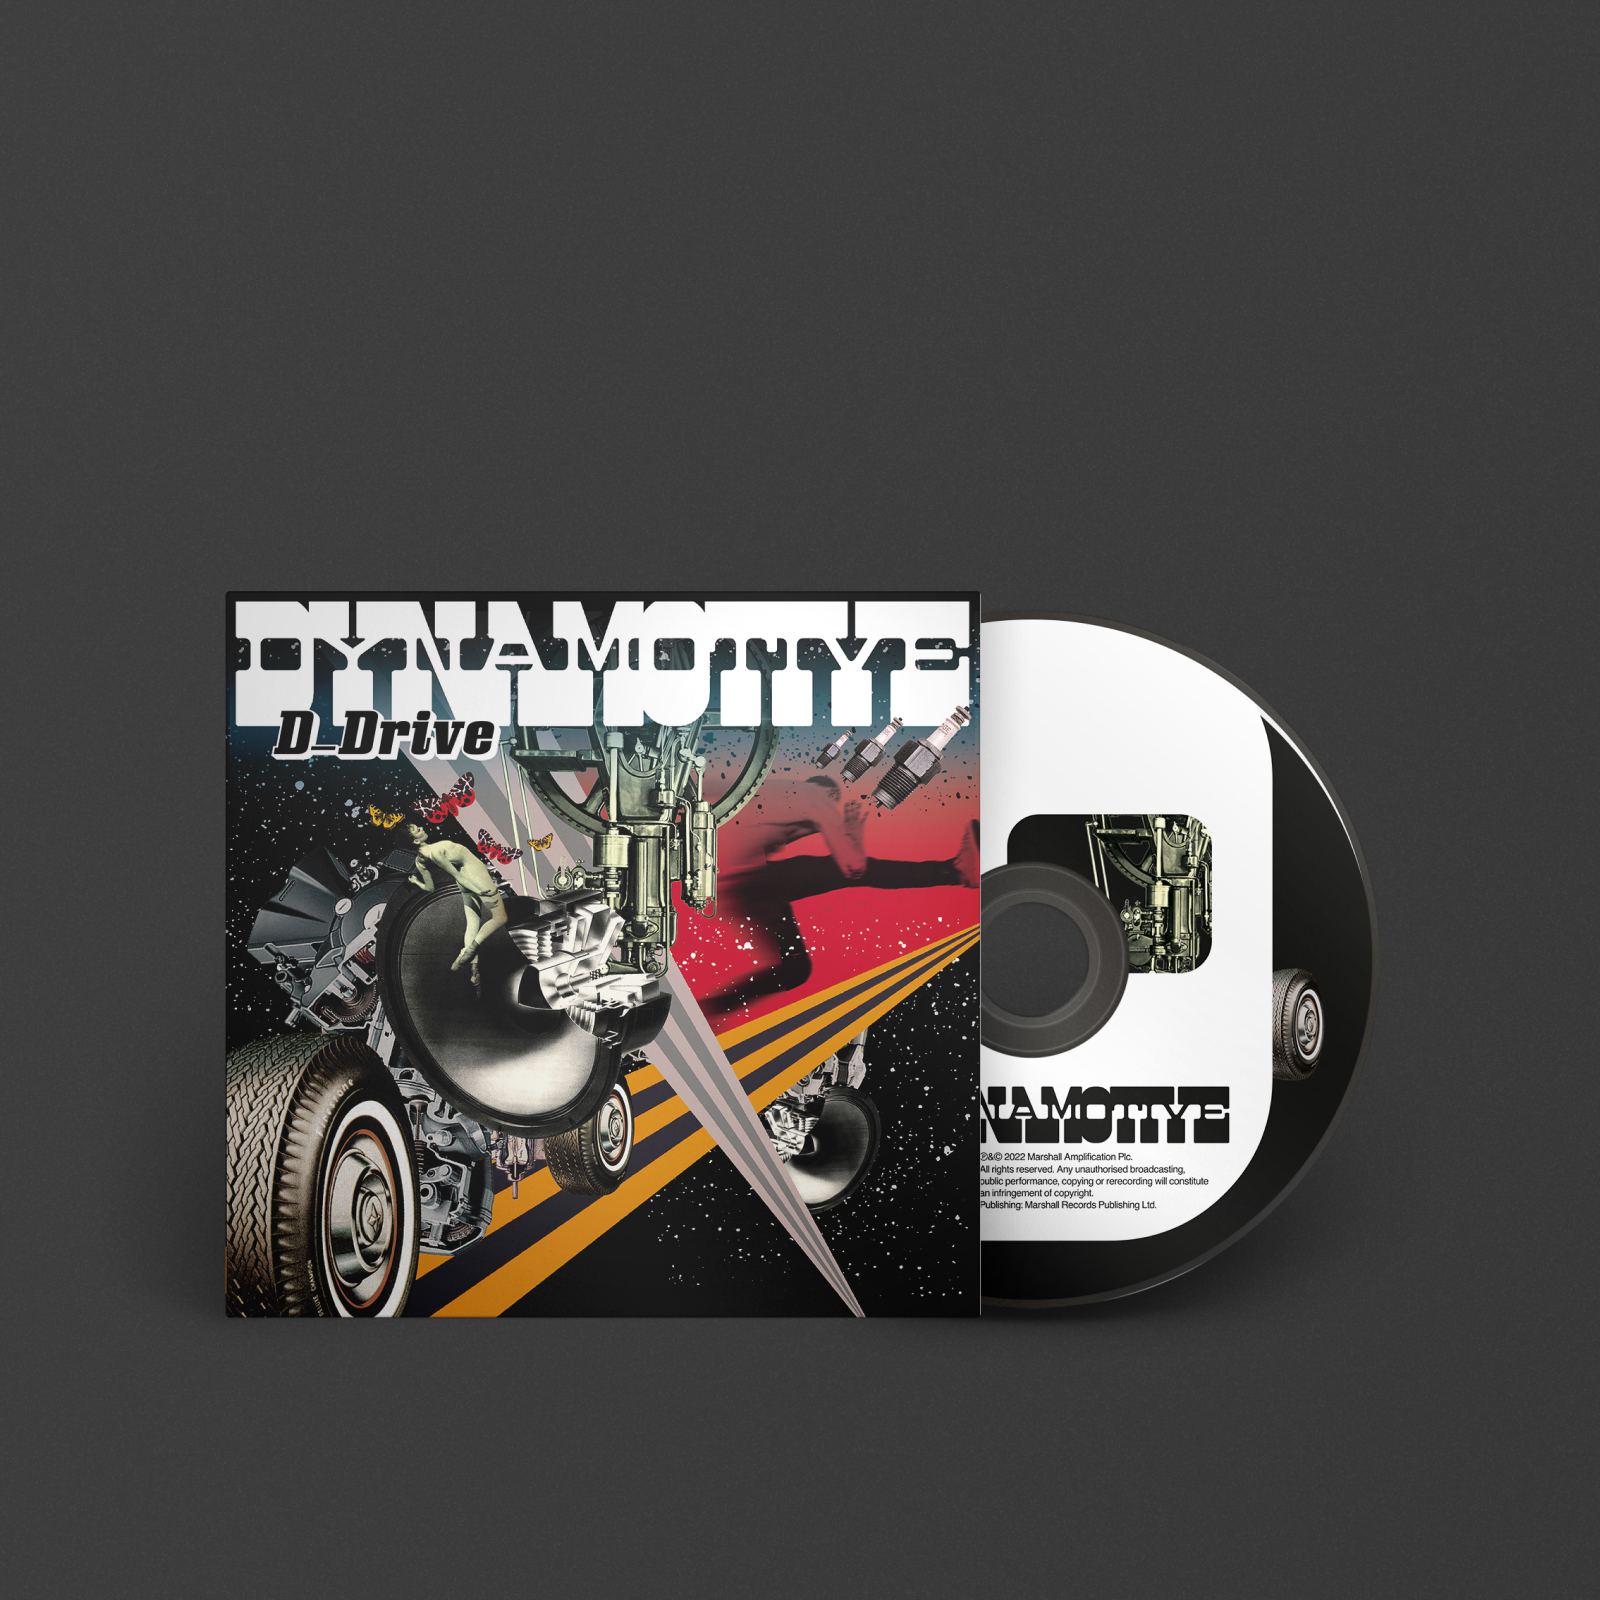 자동차와 모터사이클의 이미지 있는 D_DRIVE의 DYNAMOTIVE CD 커버.